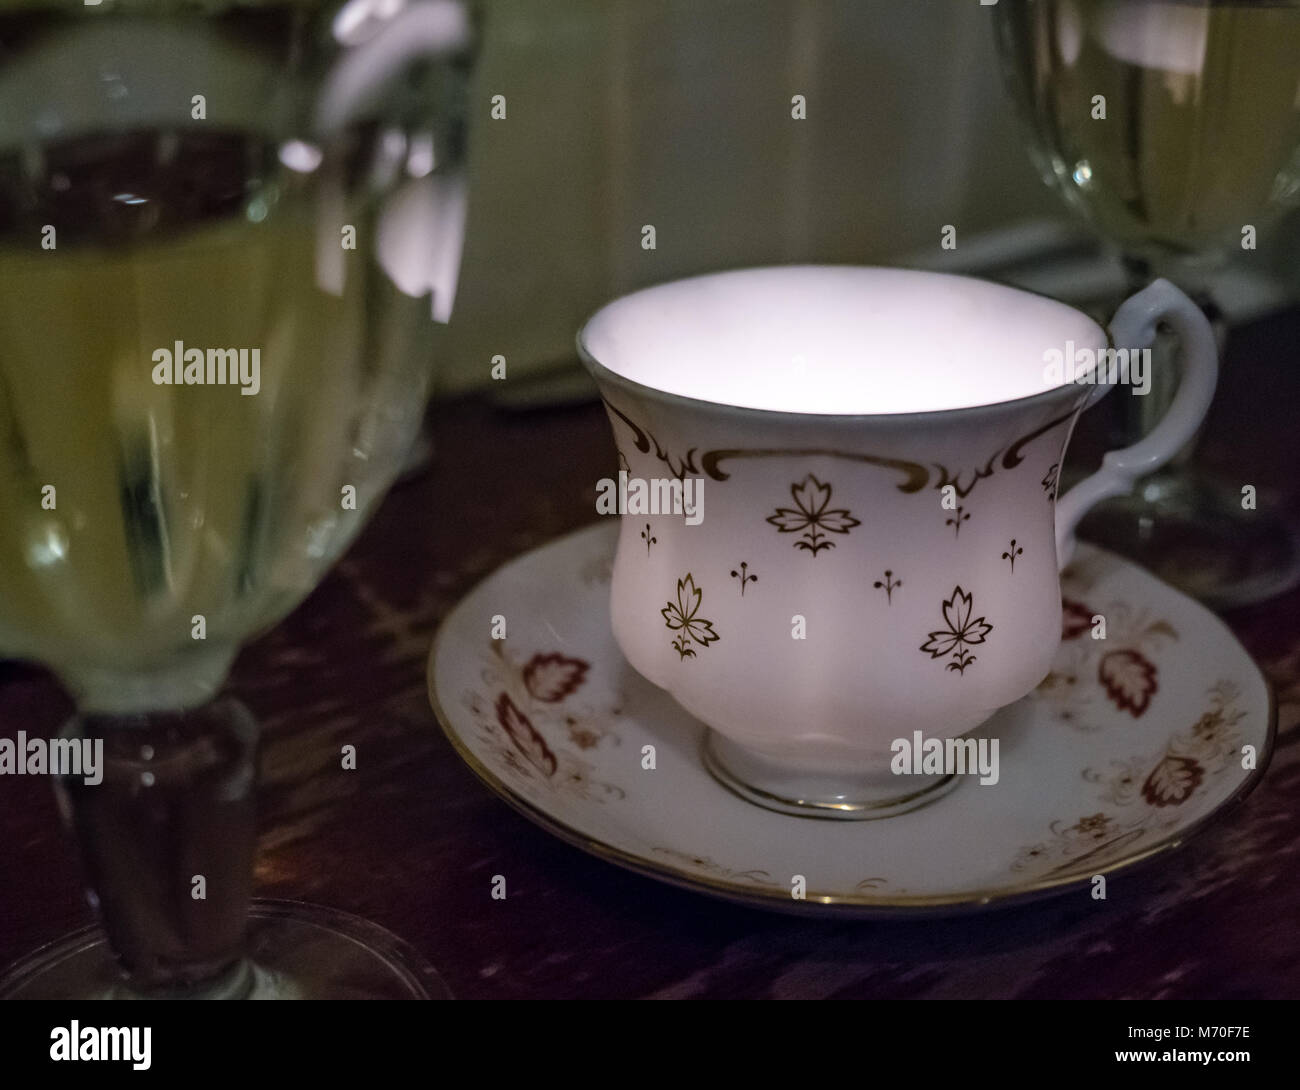 Close up of old fashioned plateau tasse et soucoupe avec la lumière de bougie, vin blanc dans les verres, table de restaurant, Leith, Edinburgh, Ecosse, Royaume-Uni Banque D'Images